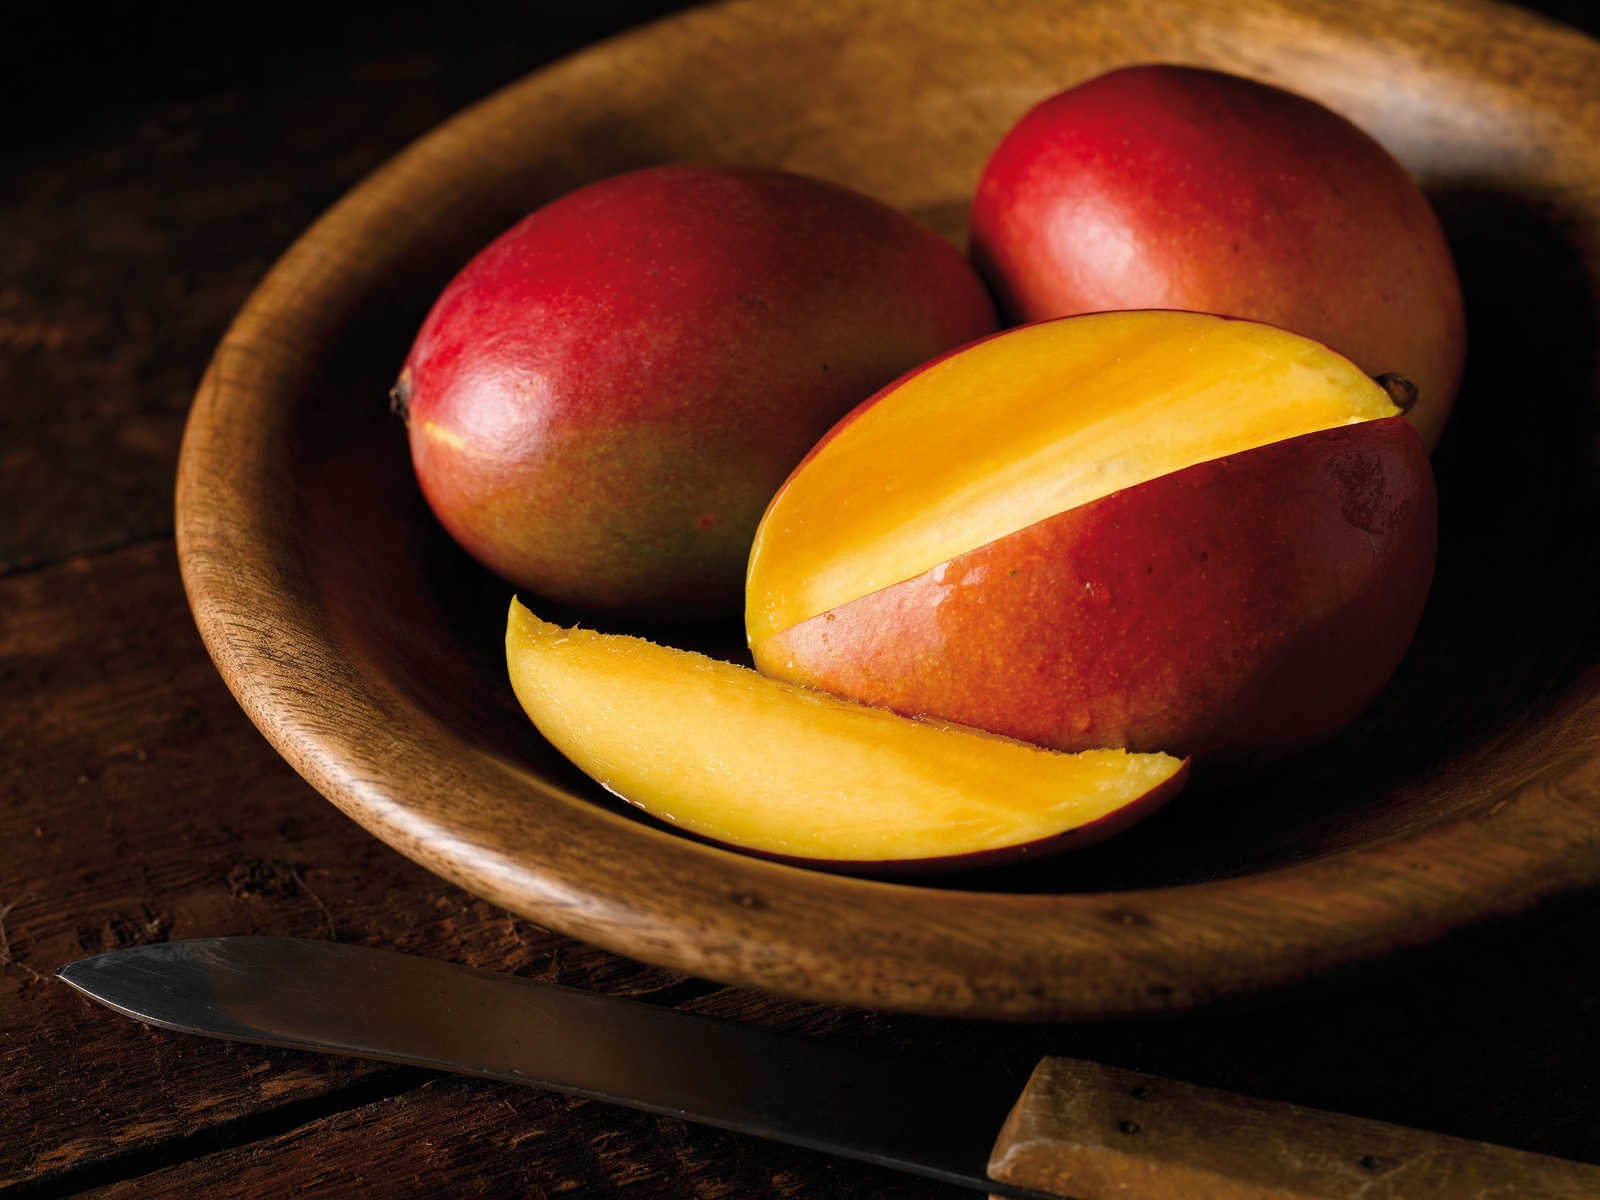             Mango Papaya Geurkaars met Fruitige Geur - 110g
        